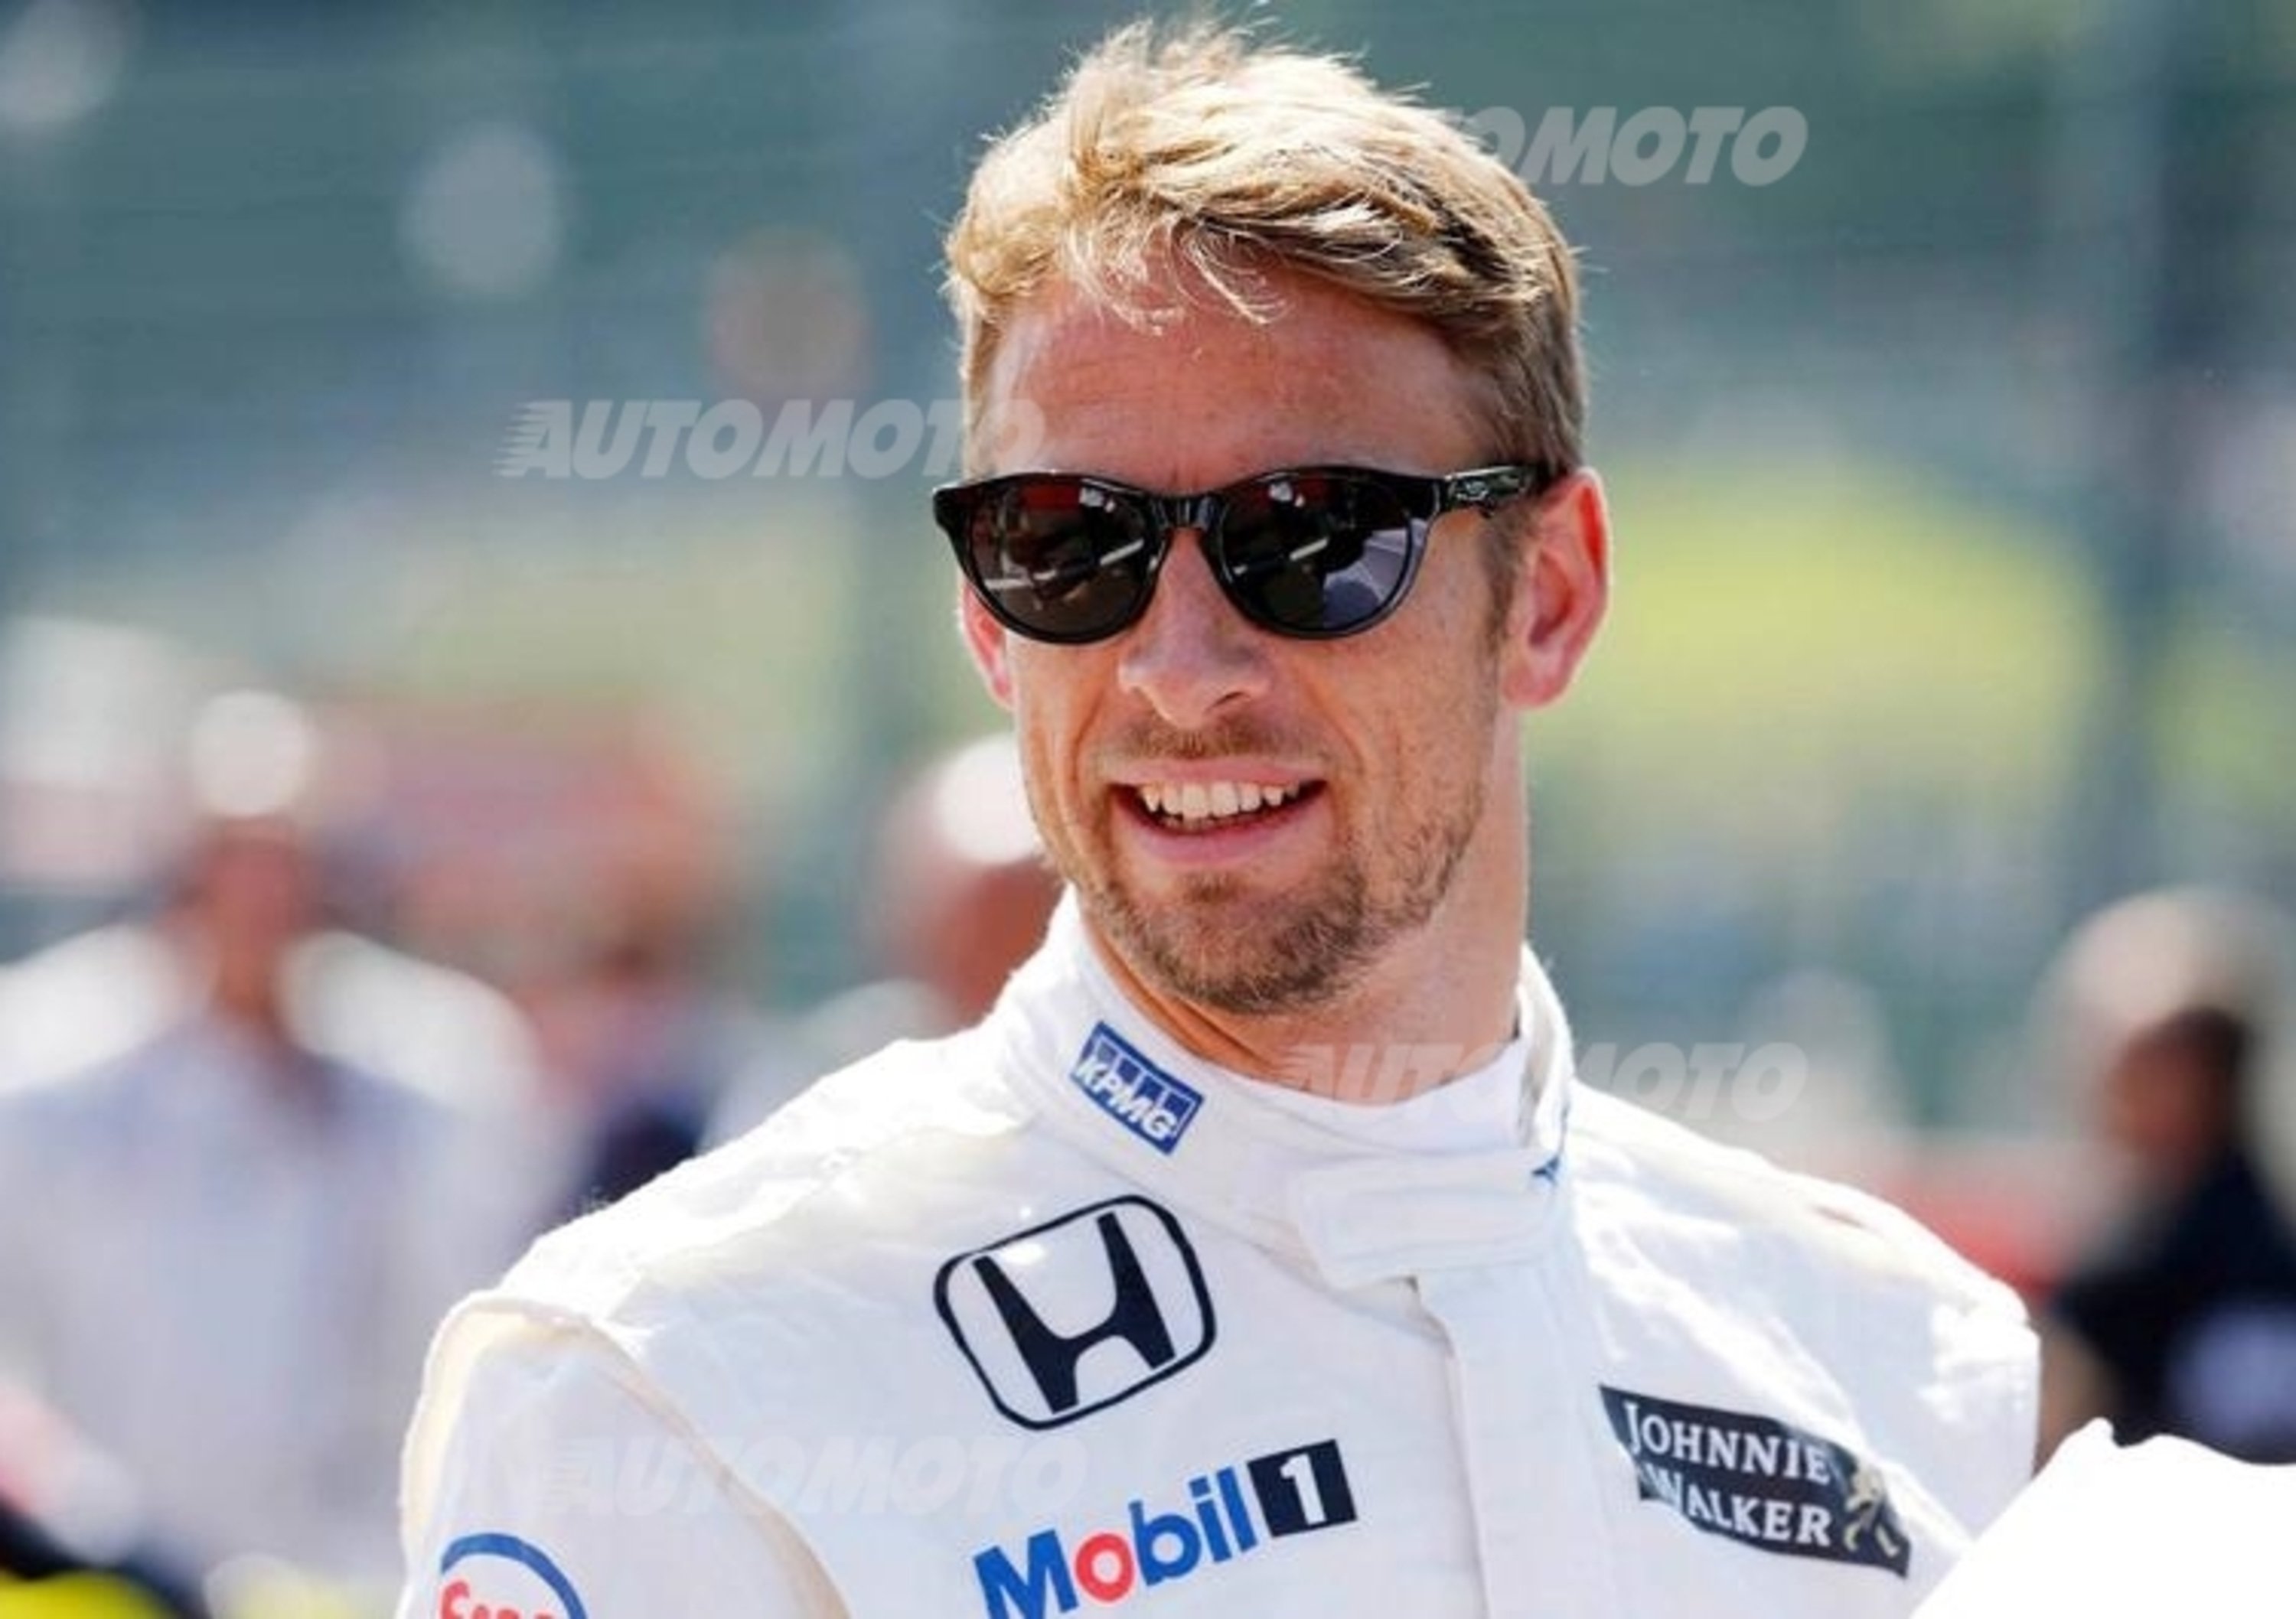 F1, Button in McLaren anche nel 2016. Giornalisti beffati